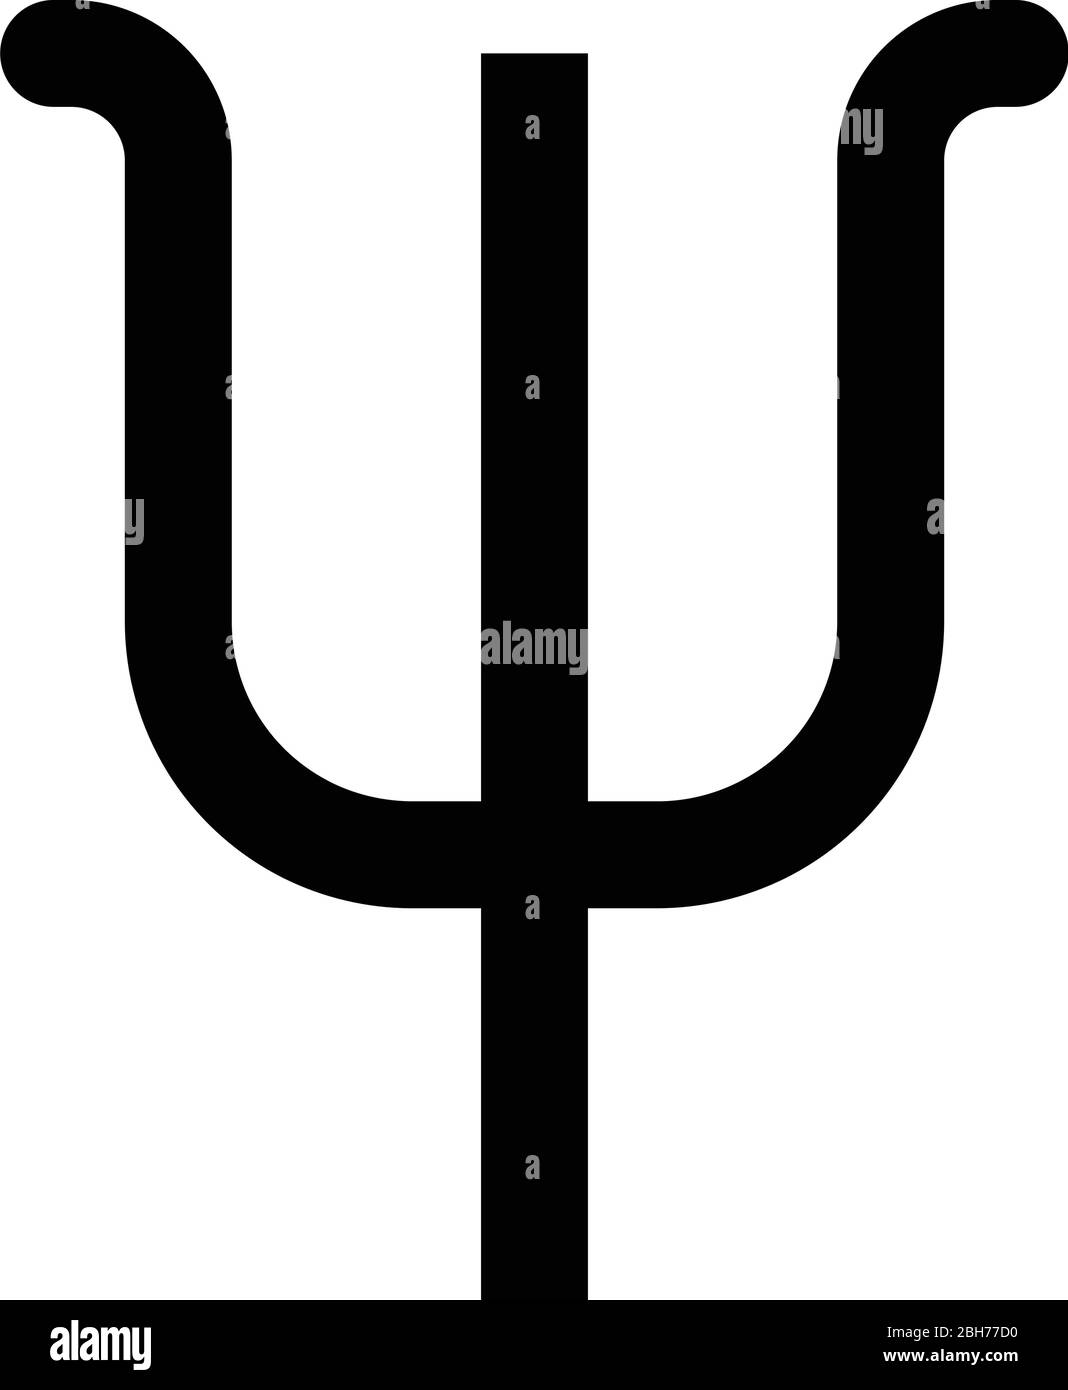 Psi symbole grec petite lettre minuscule icône de police noir illustration vectorielle couleur plate image simple Illustration de Vecteur